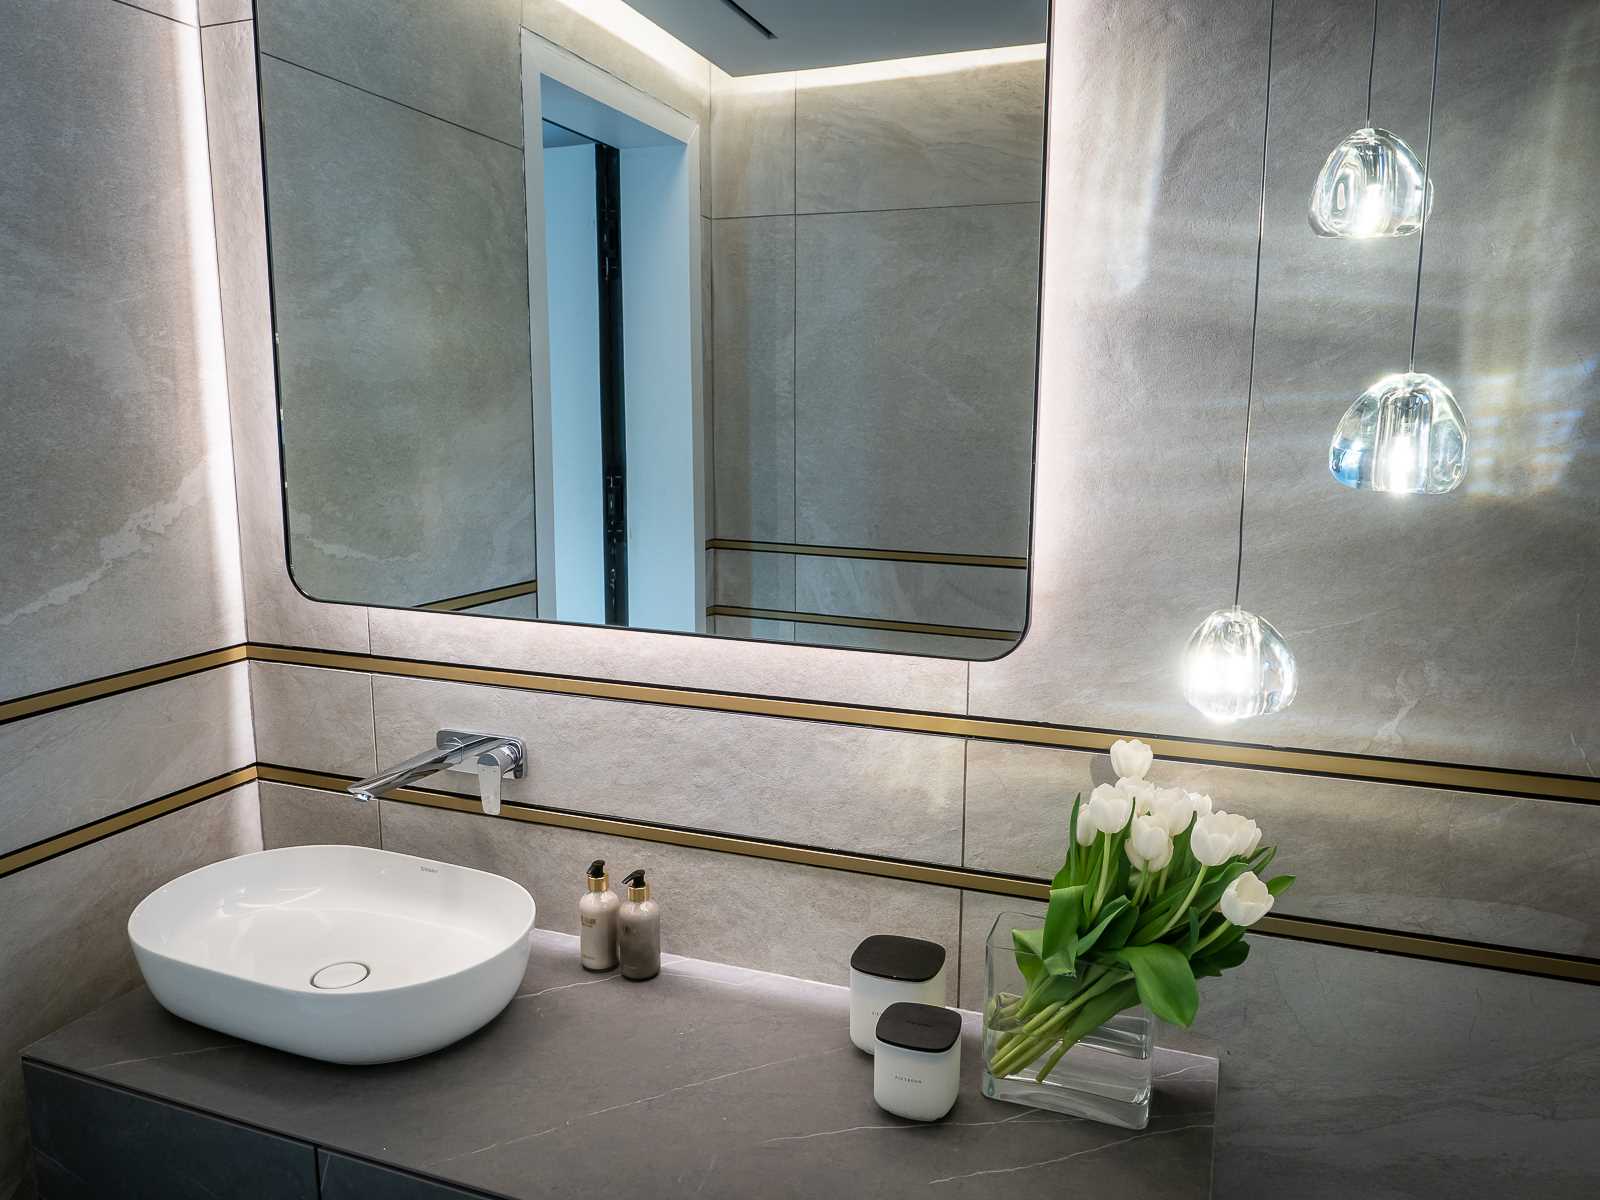 A modern bathroom with a backlit mirror.